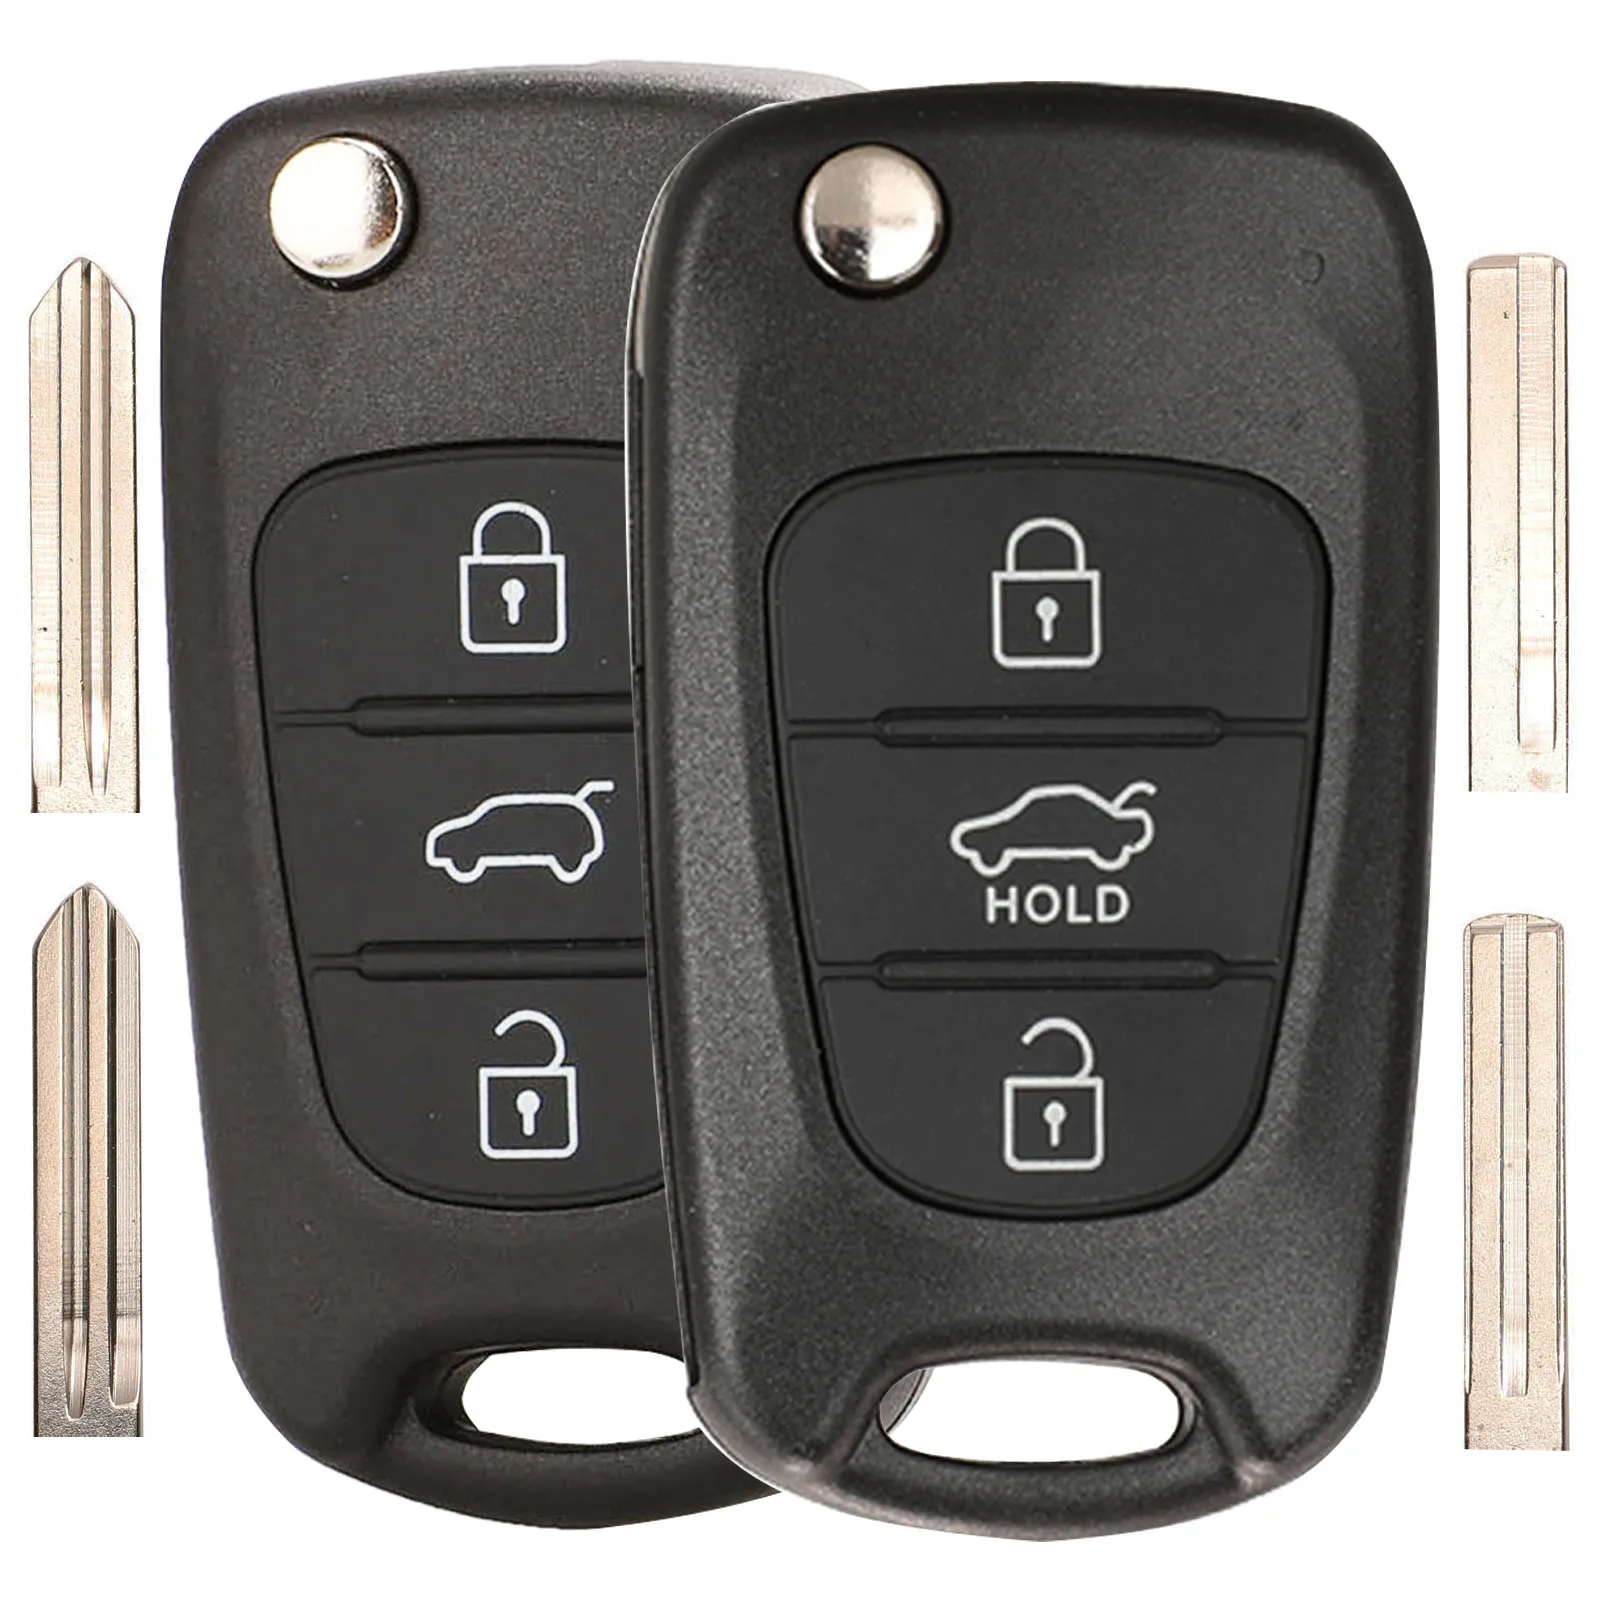 Jingyuqin Remote Car Key Shell For Kia K2 K5 Rio 3 Picanto Ceed Sportage Cerato Sorento Soul Hyundai I20/30/35 IX25/35 Accent